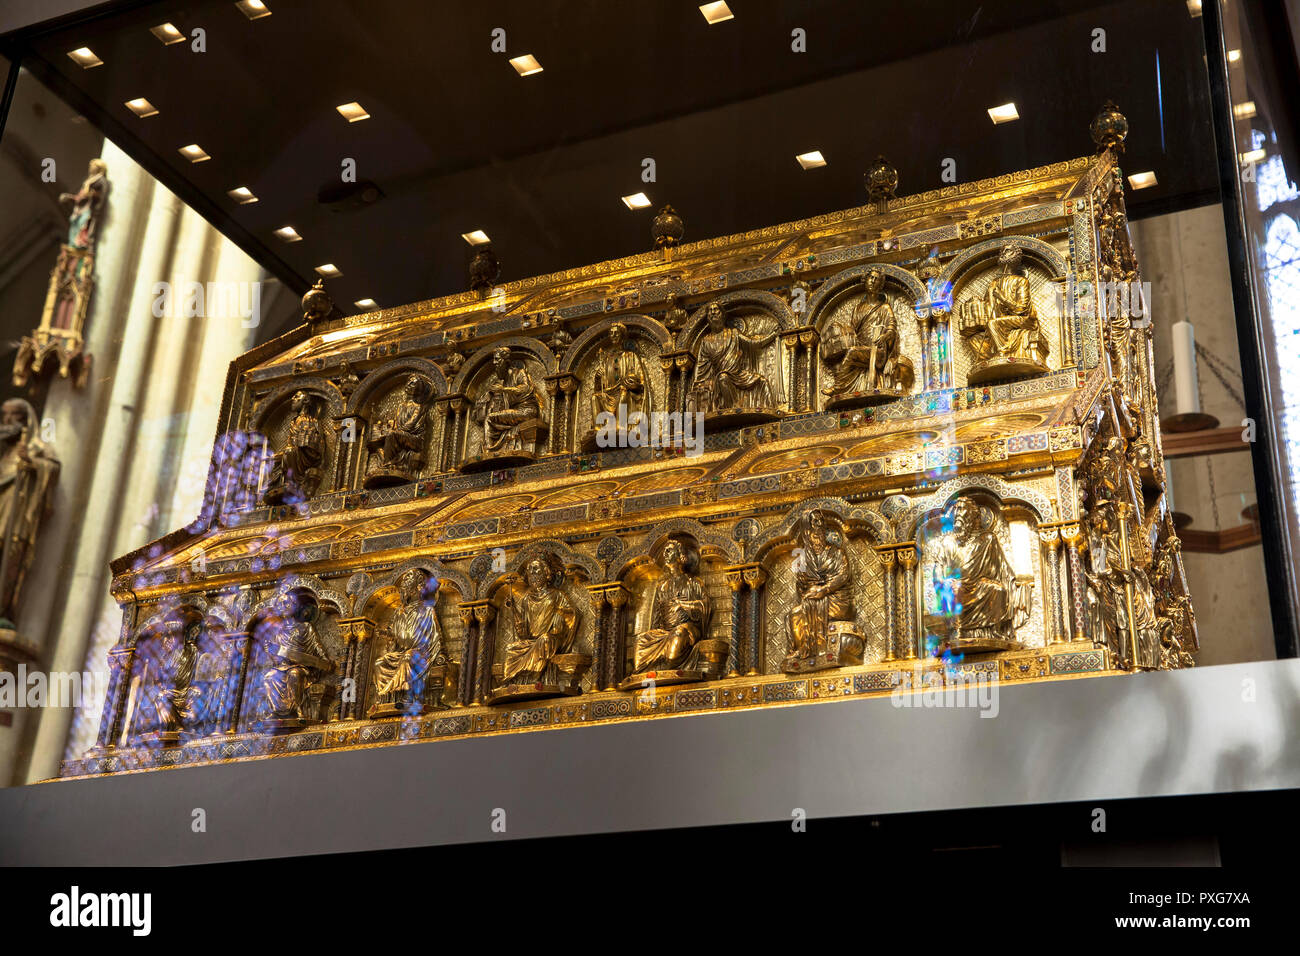 Il santuario dei tre Re Magi presso la cattedrale di Colonia, Germania. der Dreikoenigsschrein im Dom, Koeln, Deutschland. Foto Stock